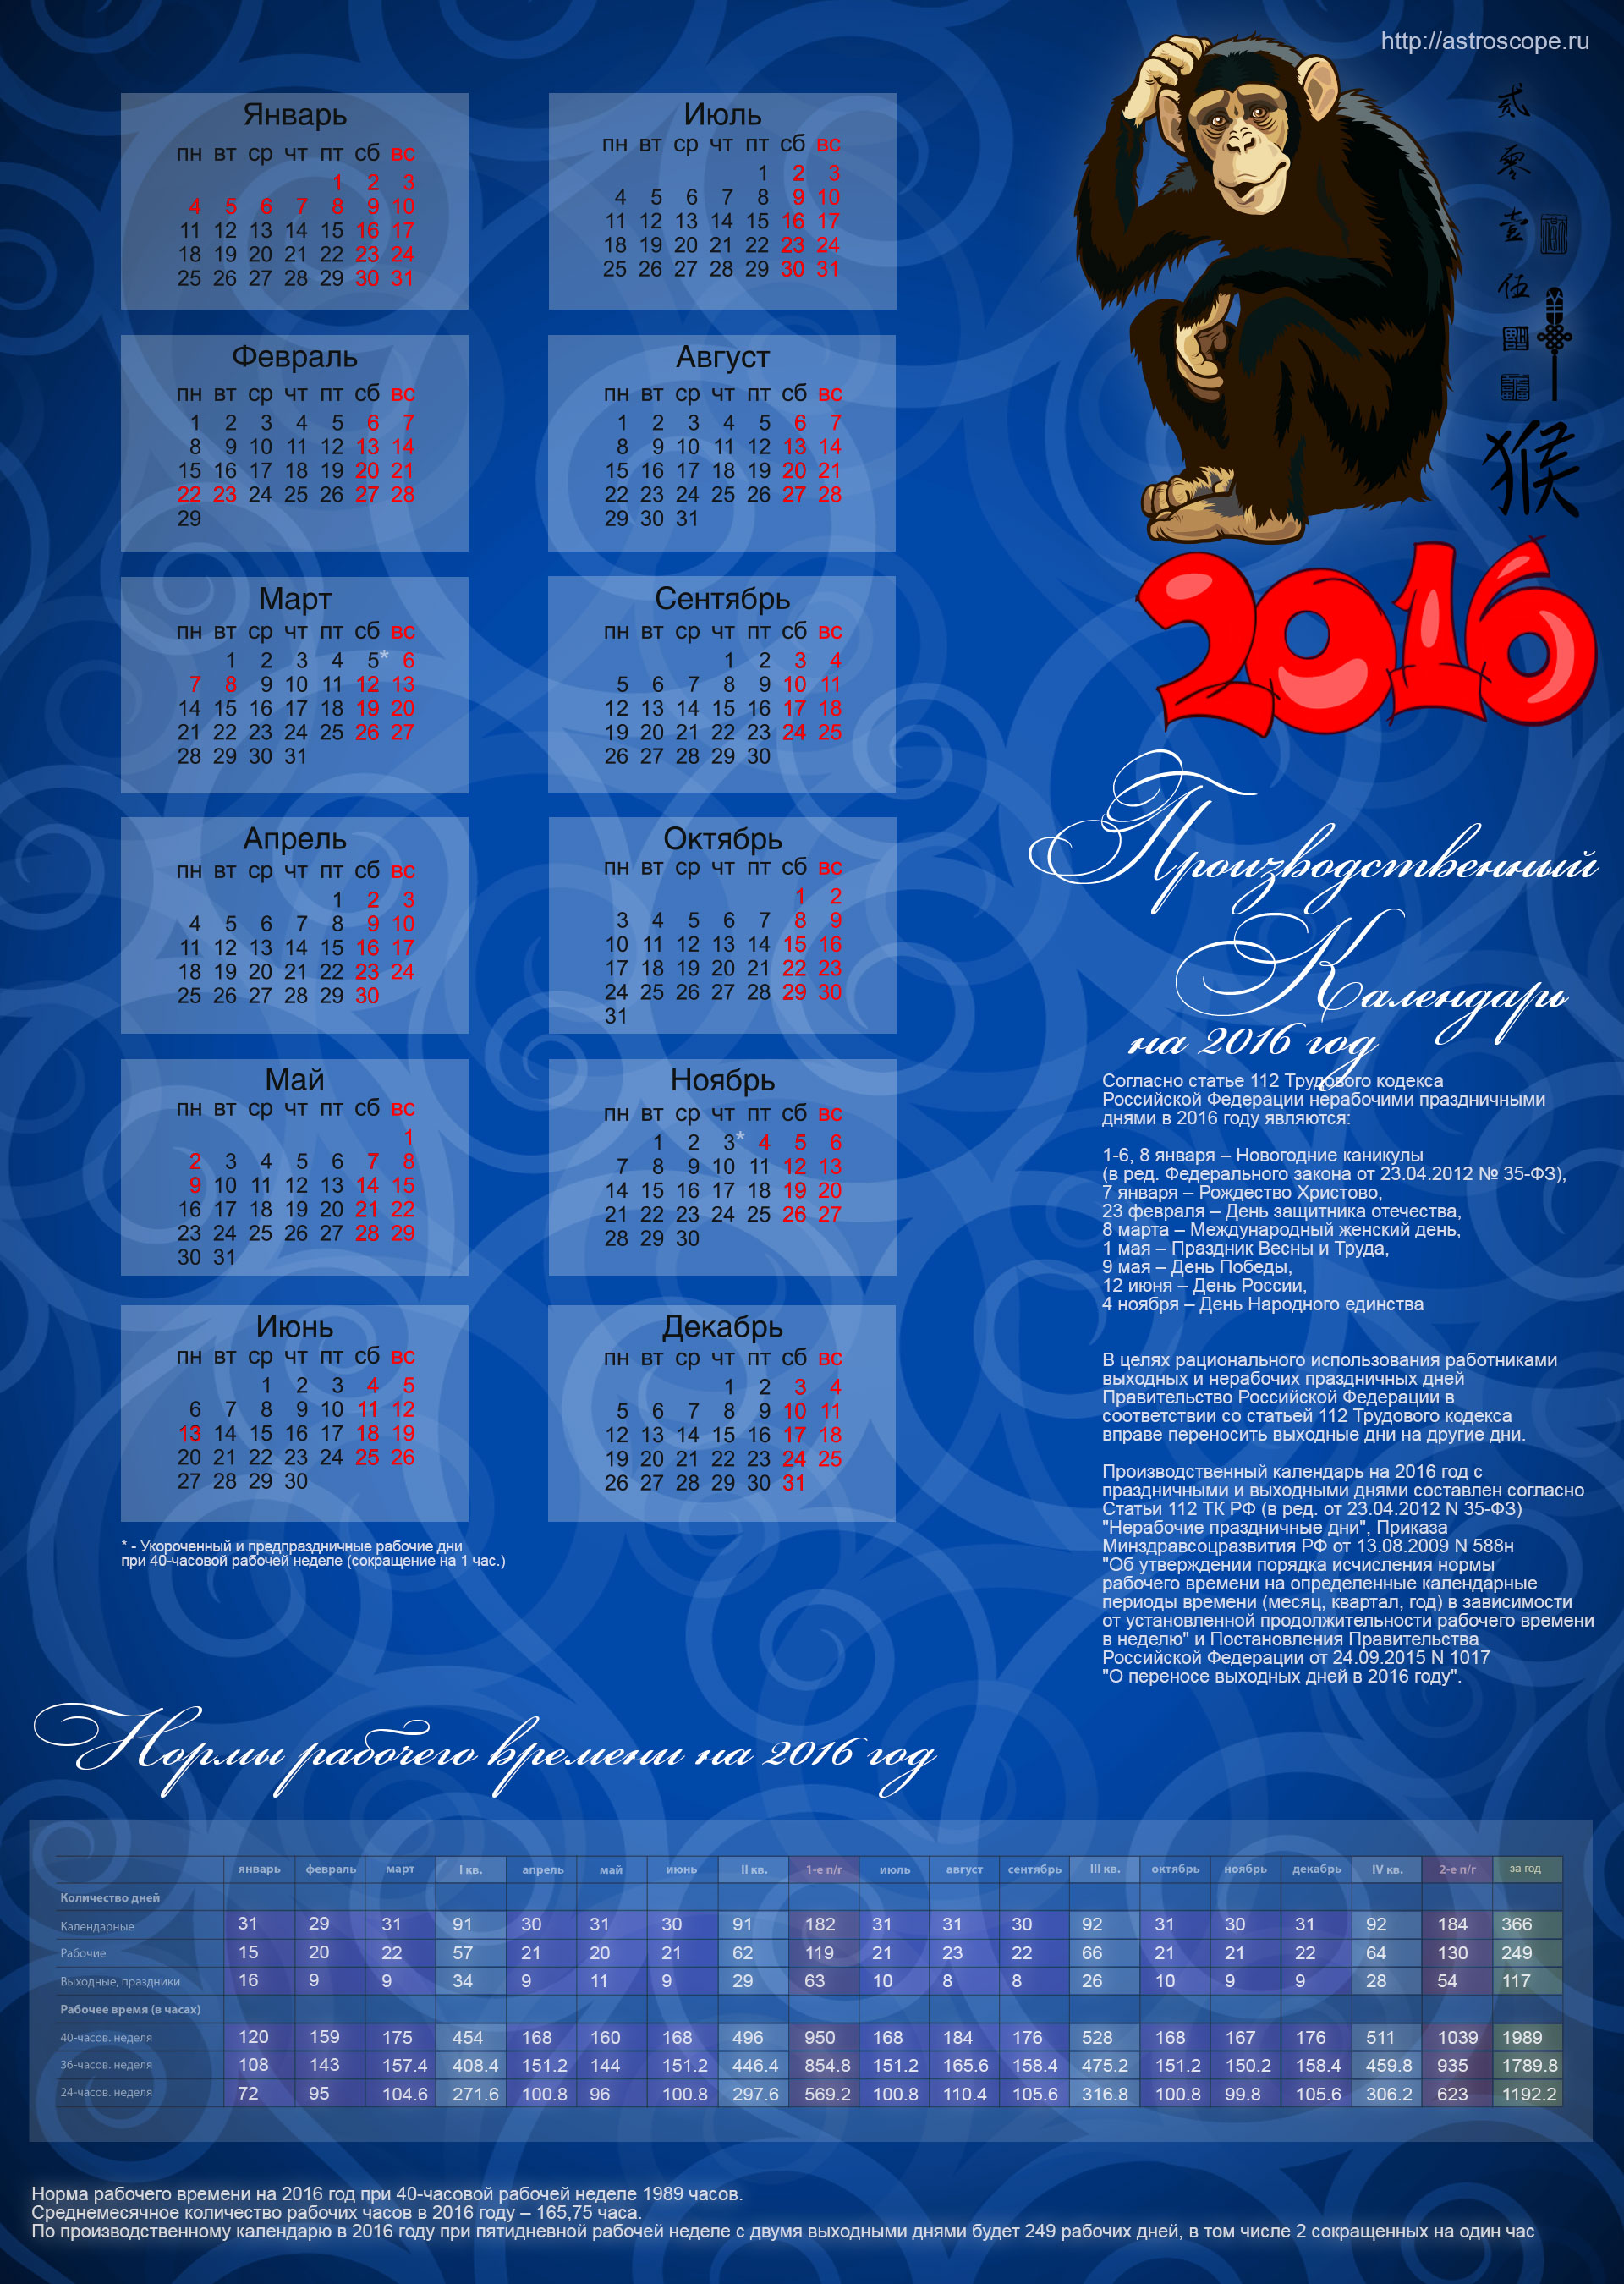 Производственный календарь 2016. Календарь 2016 года. Производственный календарь 2016 года. Праздники в календаре 2016 года. Календарь на 2016 год с праздниками и выходными.